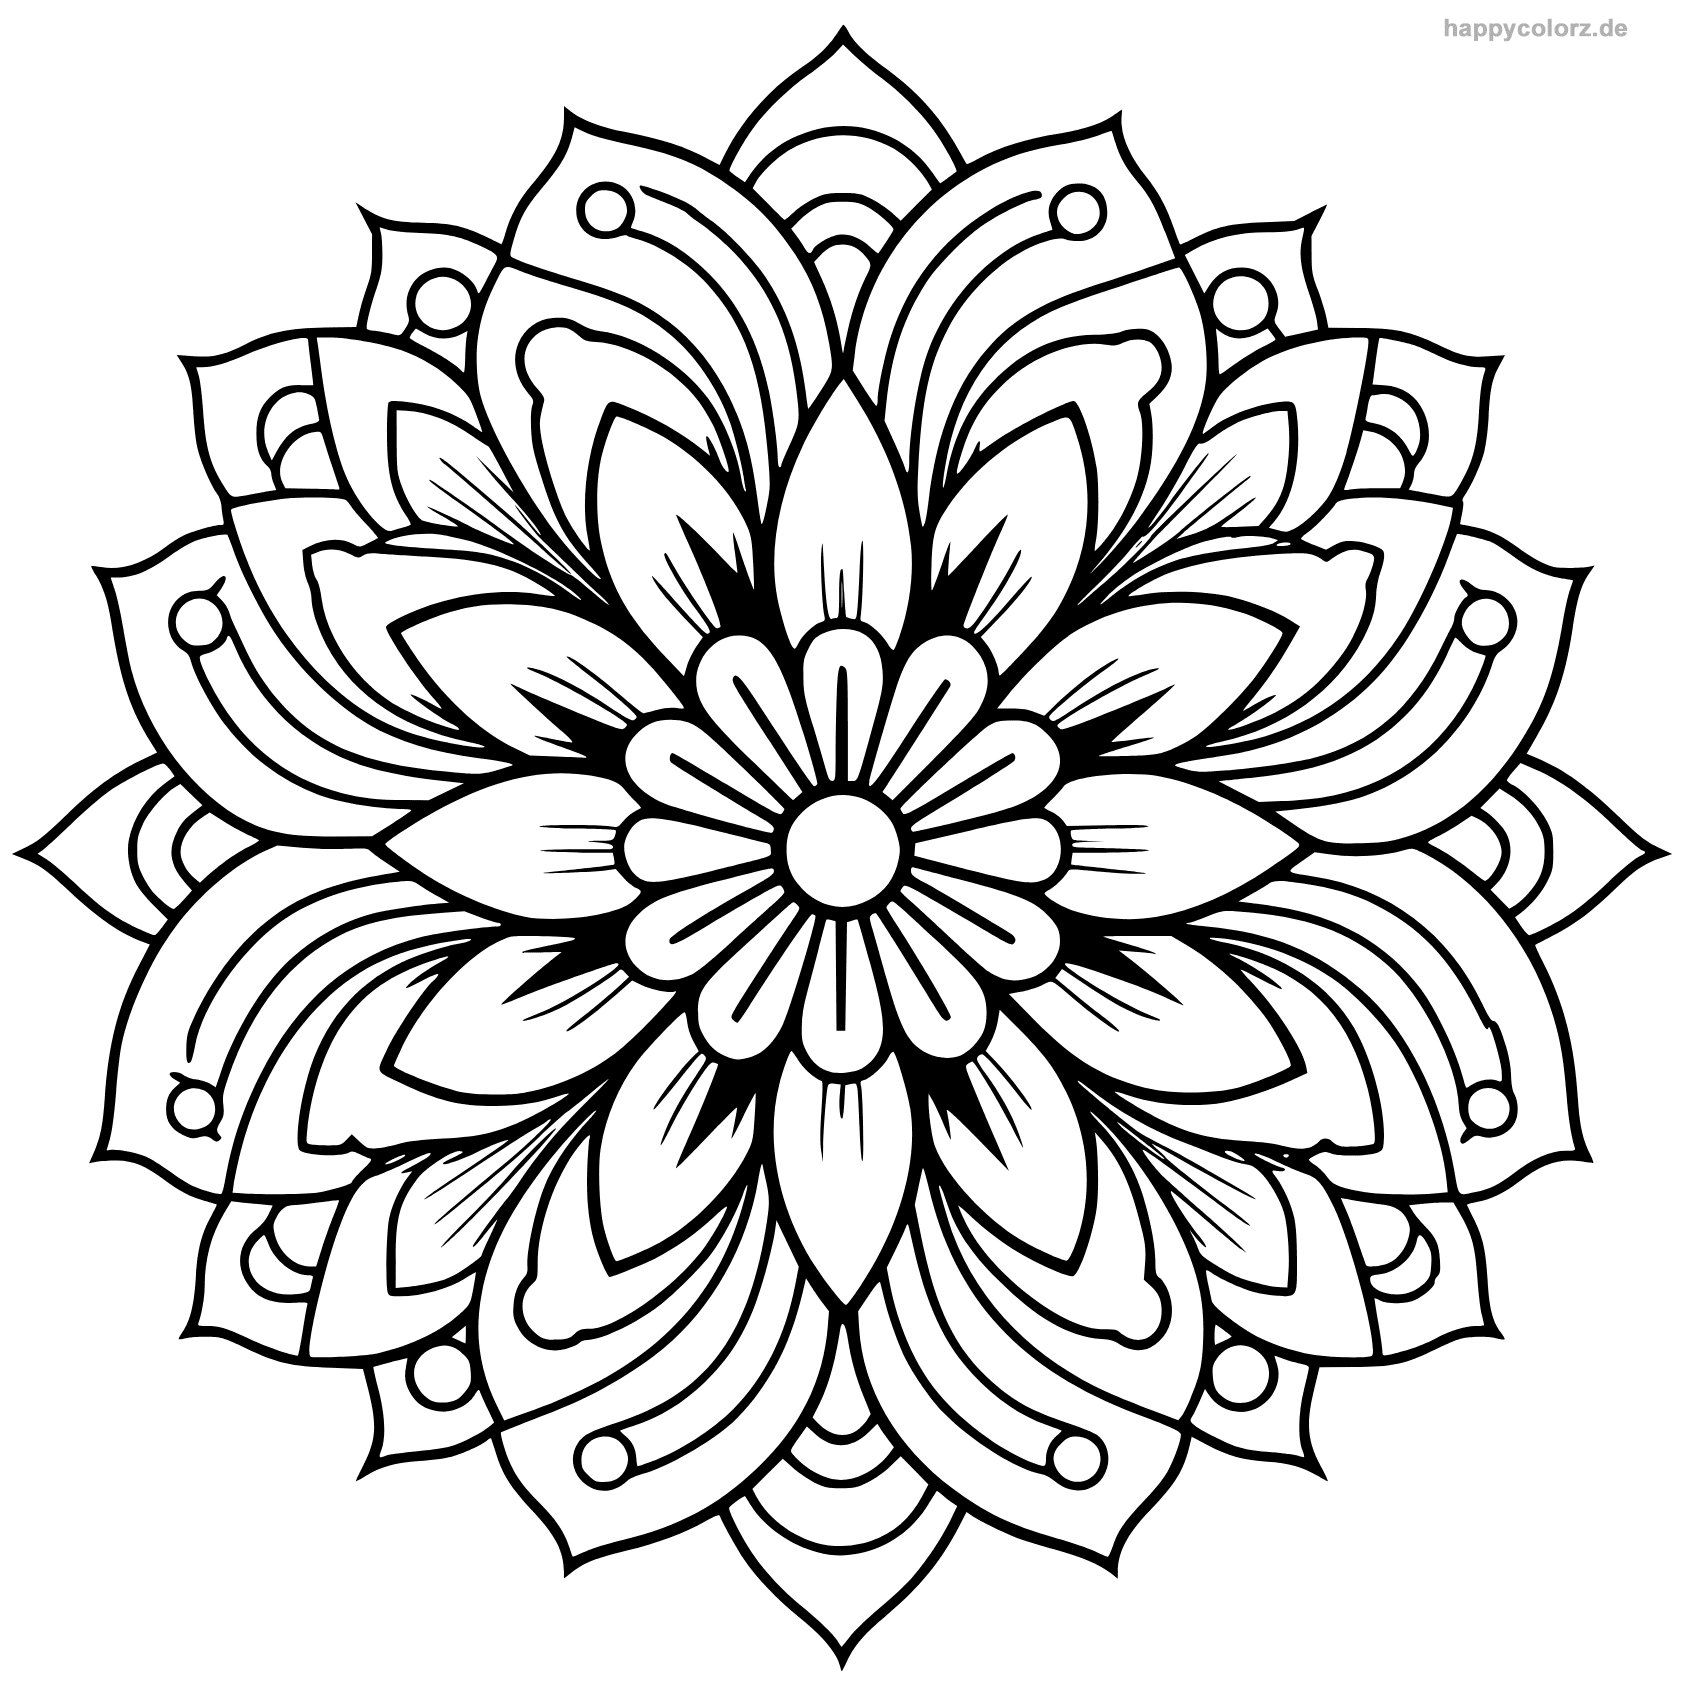 Mandala Blume als Vorlage zum Ausdrucken